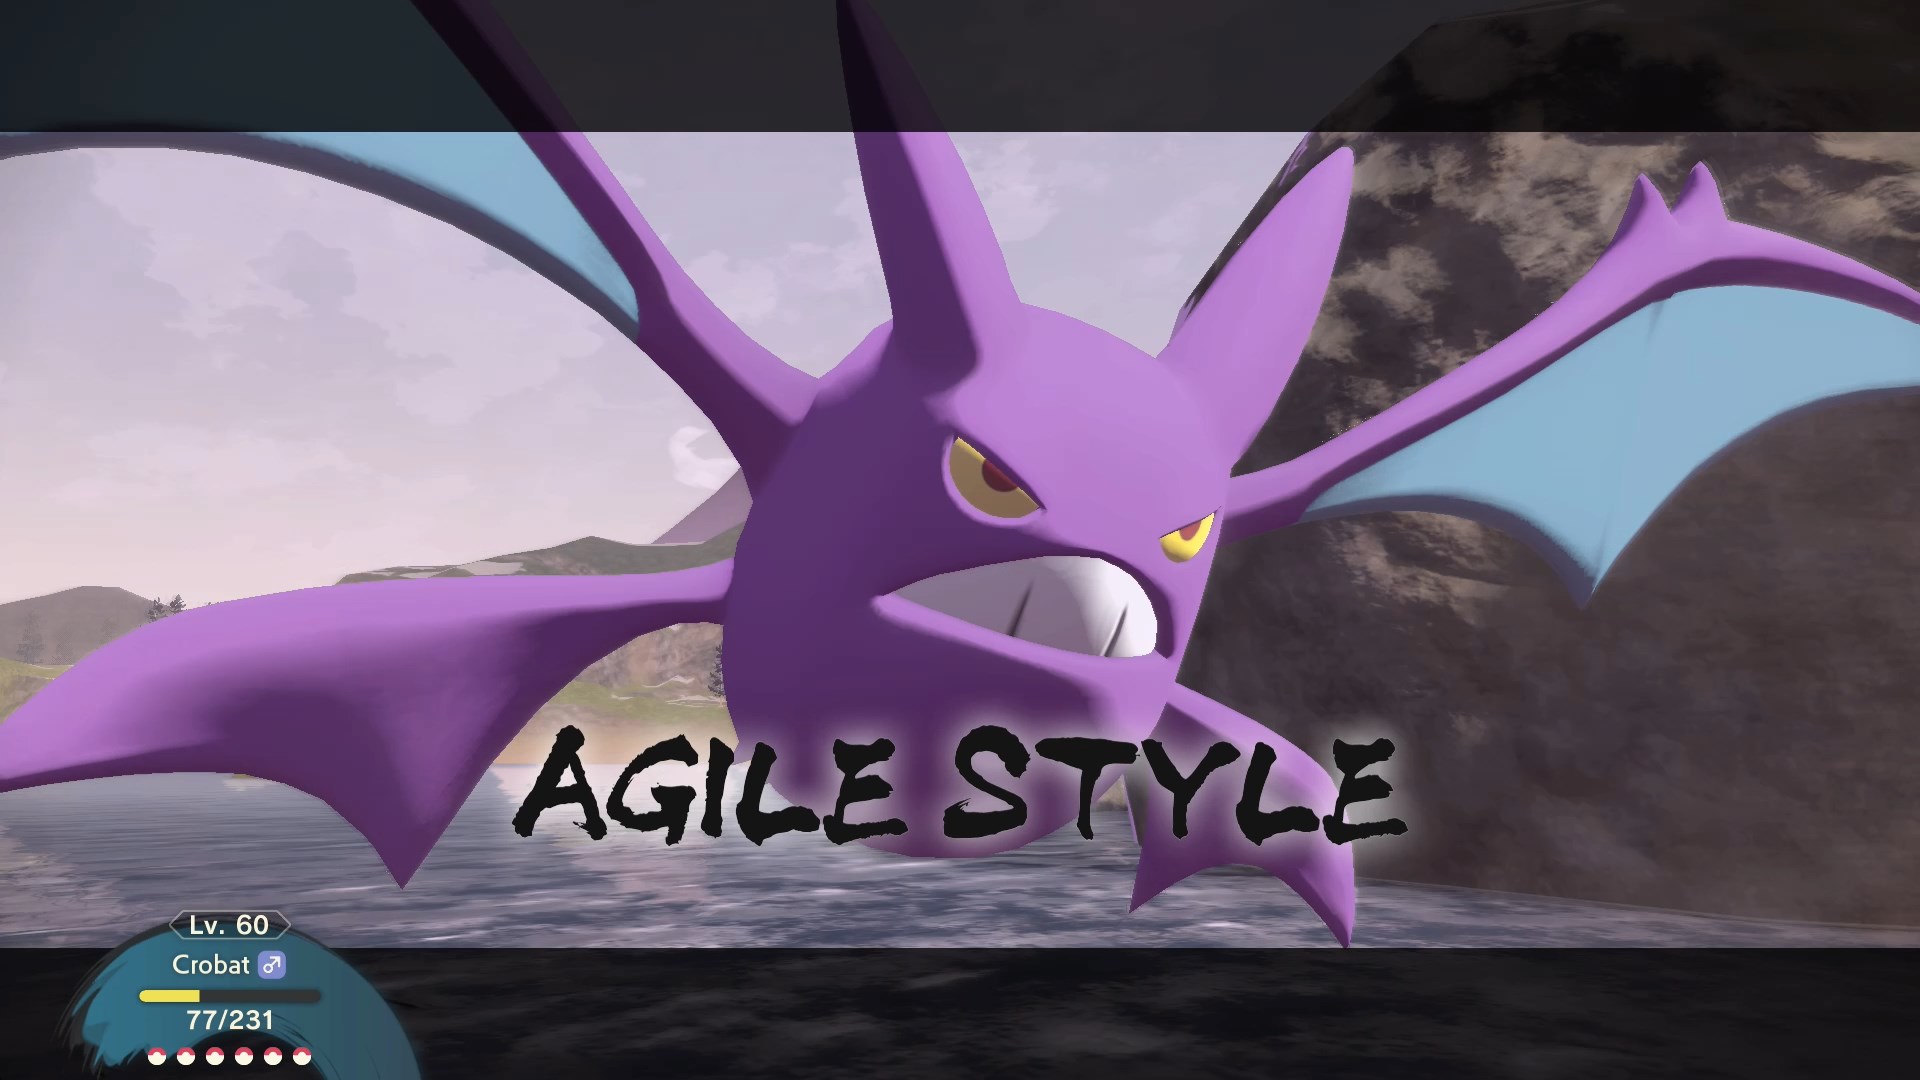 Destrinchamos  Pokémon Legends: Arceus – Tudo o que se sabe sobre o  projeto mais ambicioso da Game Freak